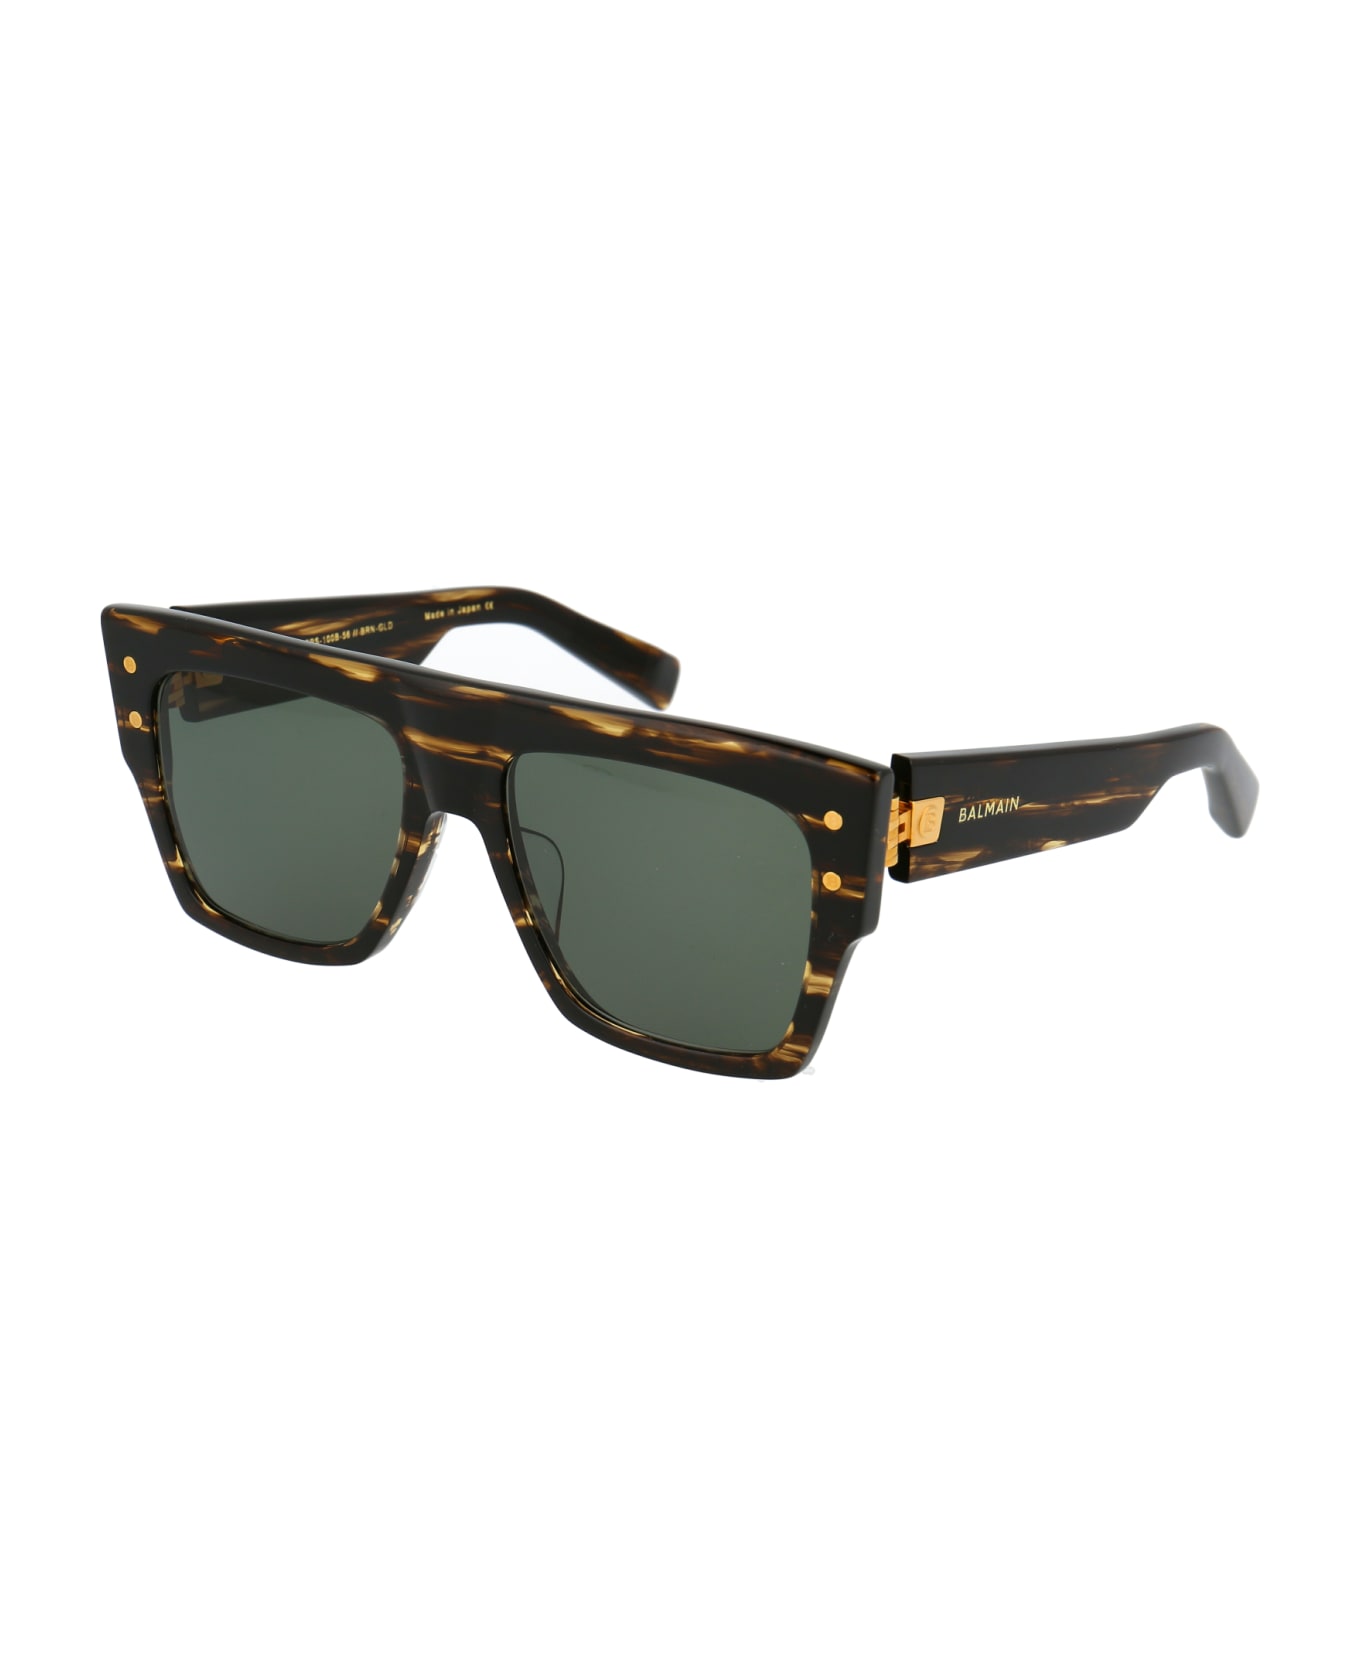 Balmain B-i Sunglasses - DARK BROWN SWIRL GOLD W/G 15 AR